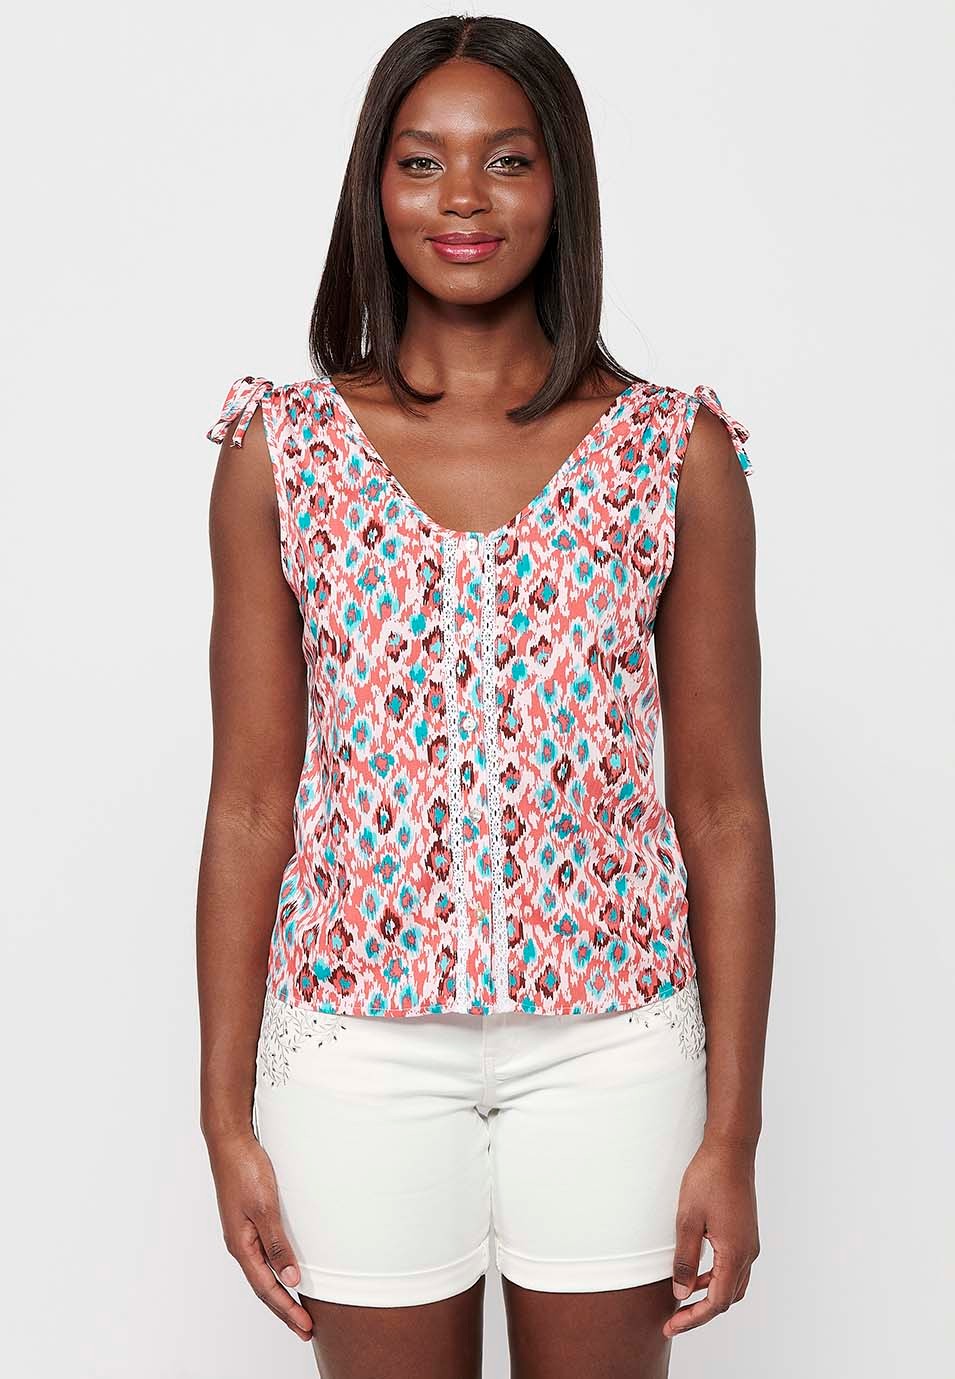 Damen-Bluse mit mehrfarbigem geometrischem Aufdruck, V-Ausschnitt und Kordelzug am Rücken, faltig, breite Träger 1